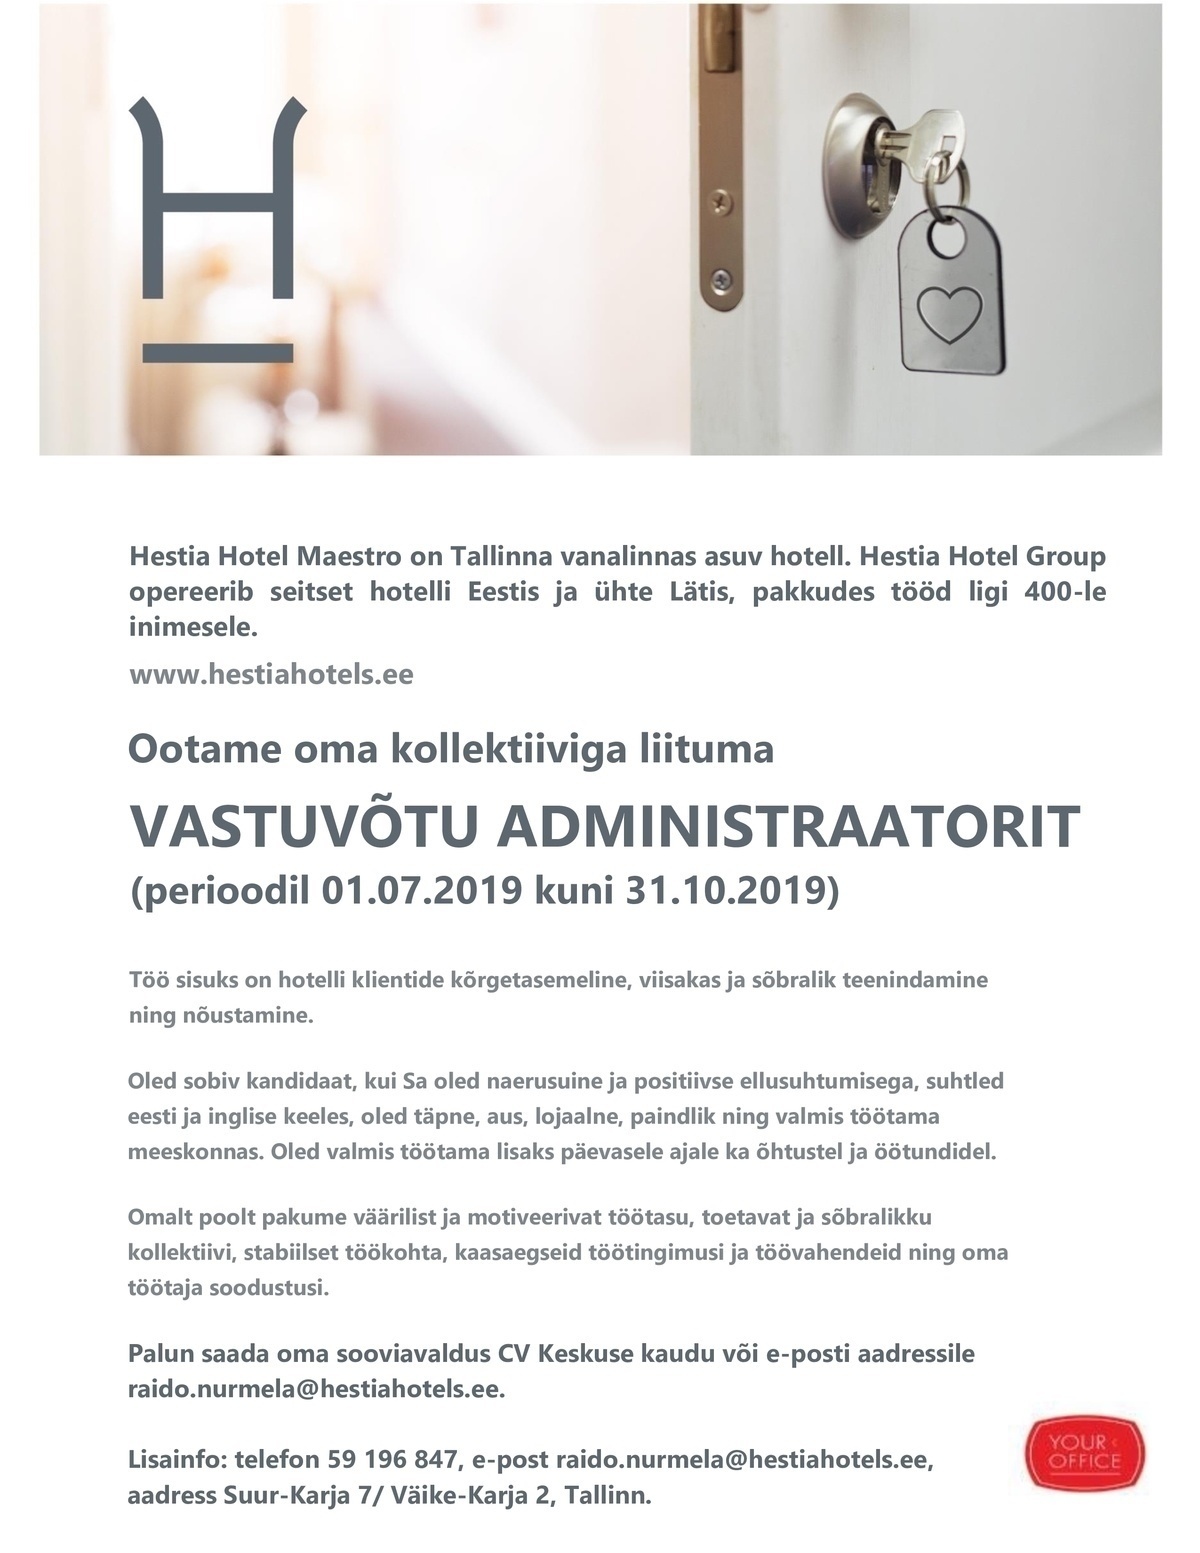 Hestia Hotel Maestro Vastuvõtu administraator - tähtajaline kuni 31.10.2019 (Hestia Hotel Maestro)